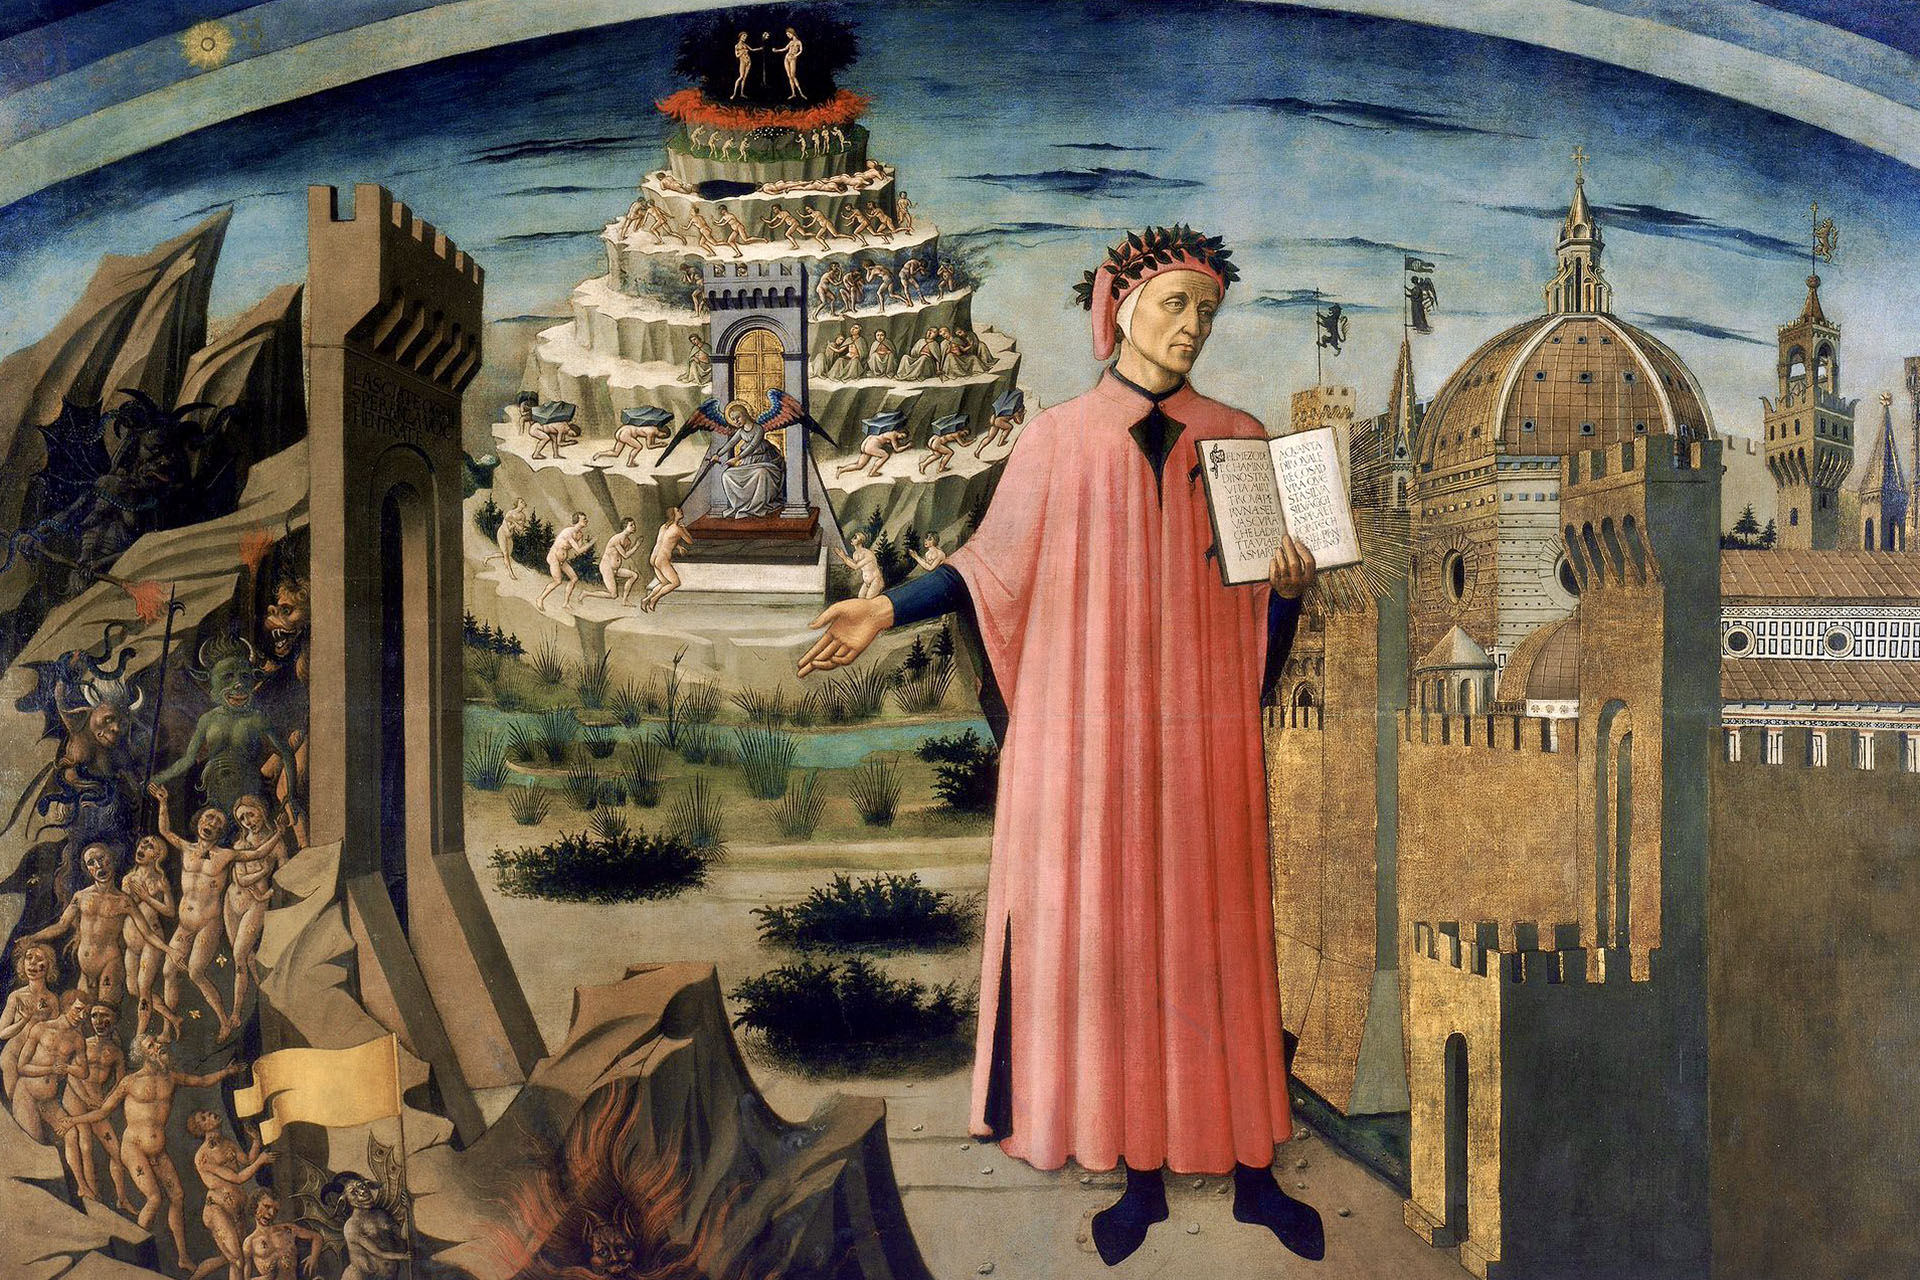 Доменико ди Микелино. «Божественная комедия освещает Флоренцию». Фреска, 1465 год. Собор Санта-Мария-дель-Фьоре, Флоренция